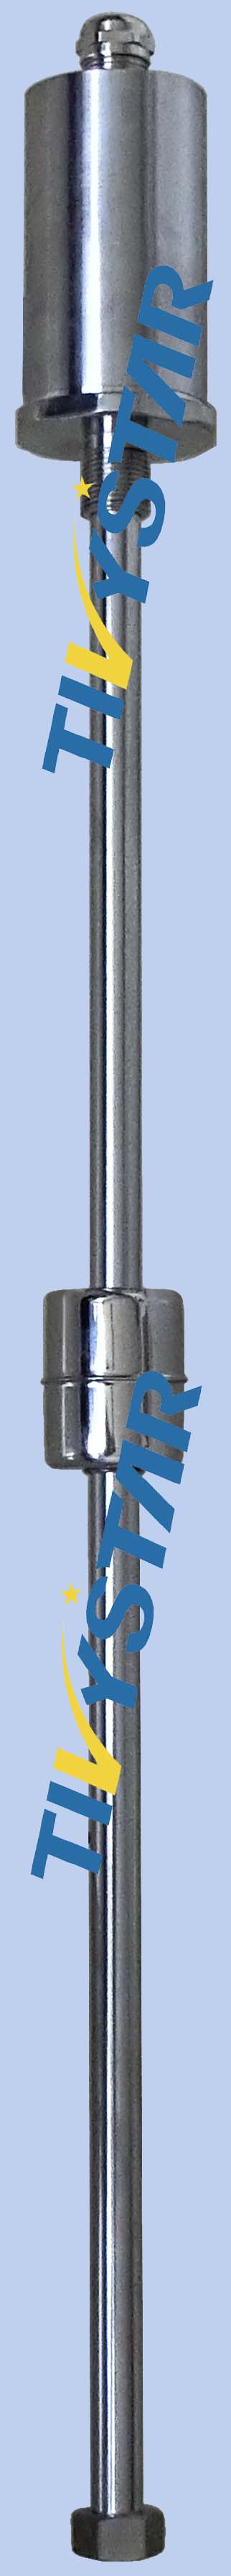 优质磁致伸缩液位传感器生产商-提供磁致伸缩液位传感器销售